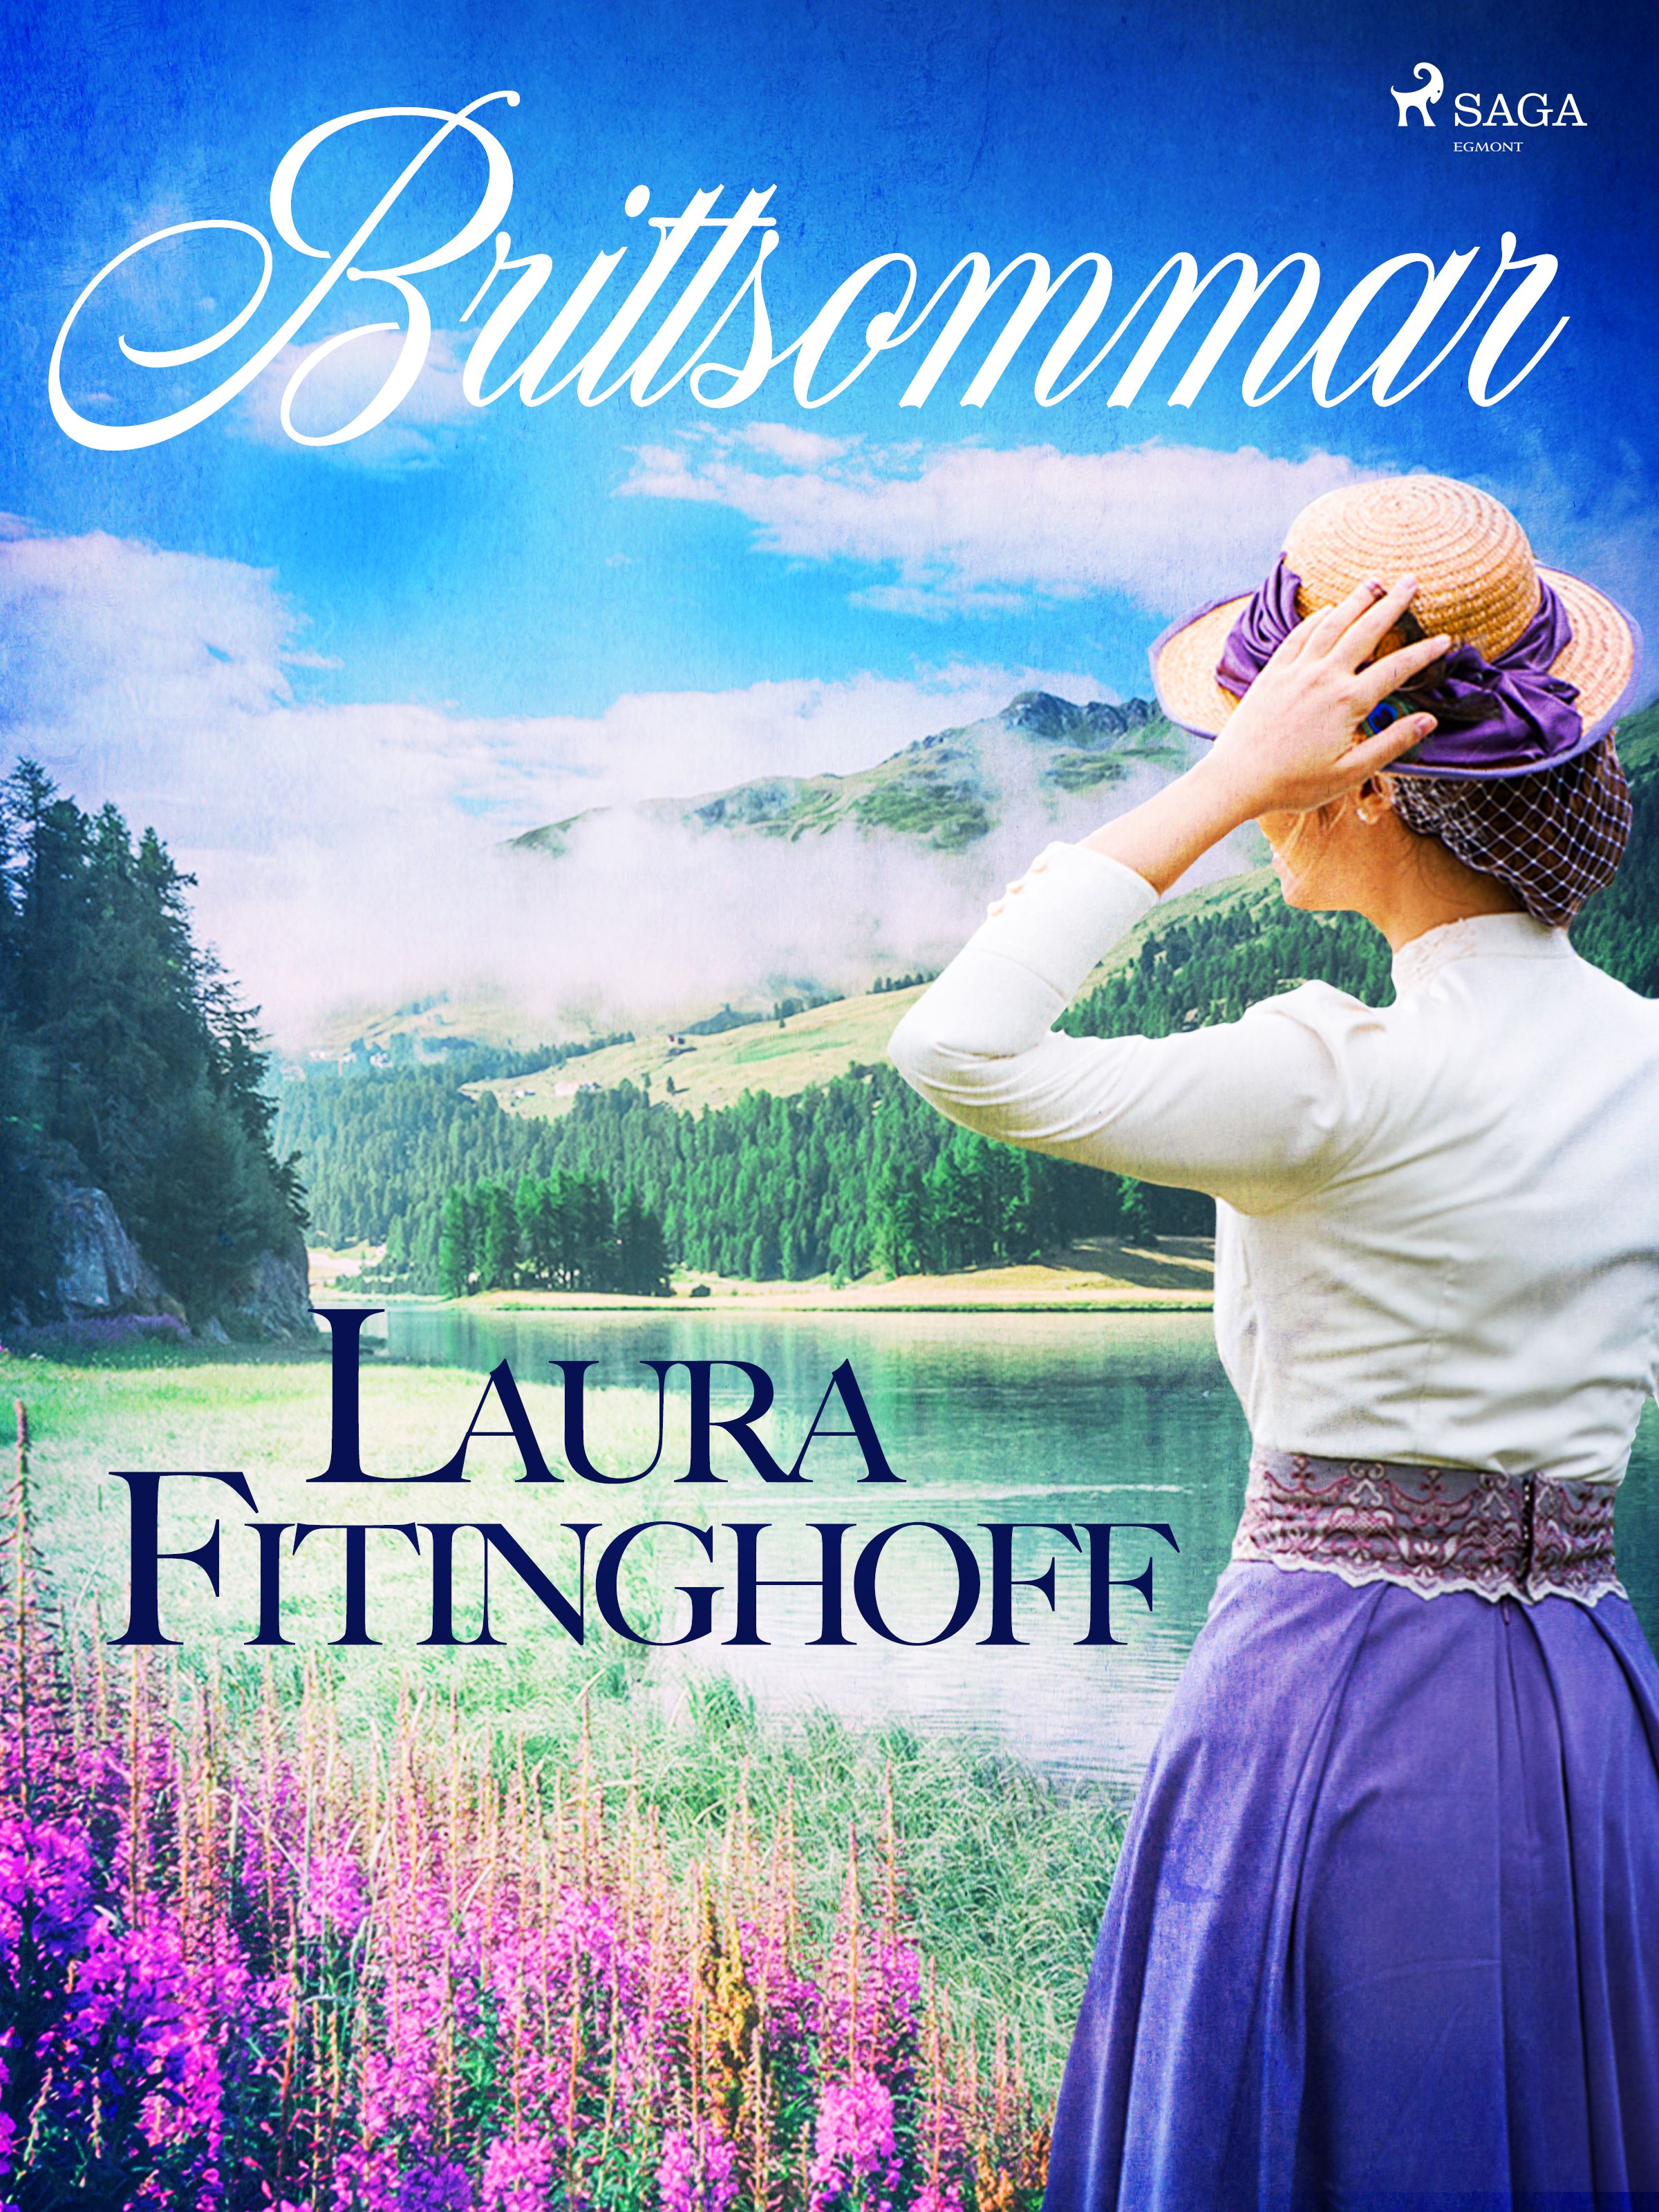 Brittsommar, e-bok av Laura Fitinghoff